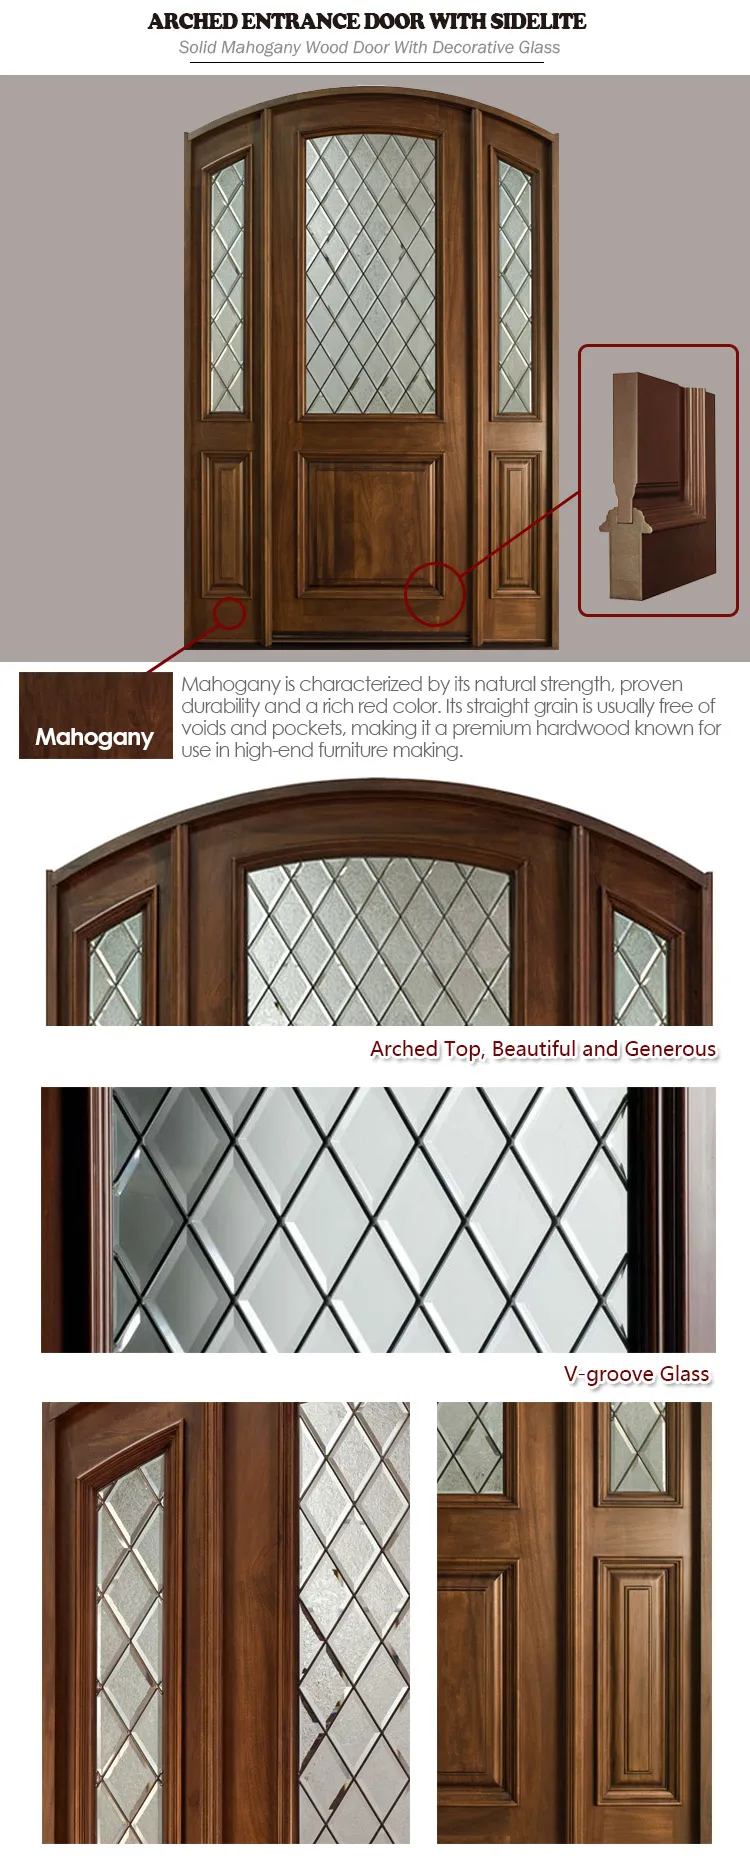 DOORWIN High Quality Latest Design Replacement Entry Wooden Door